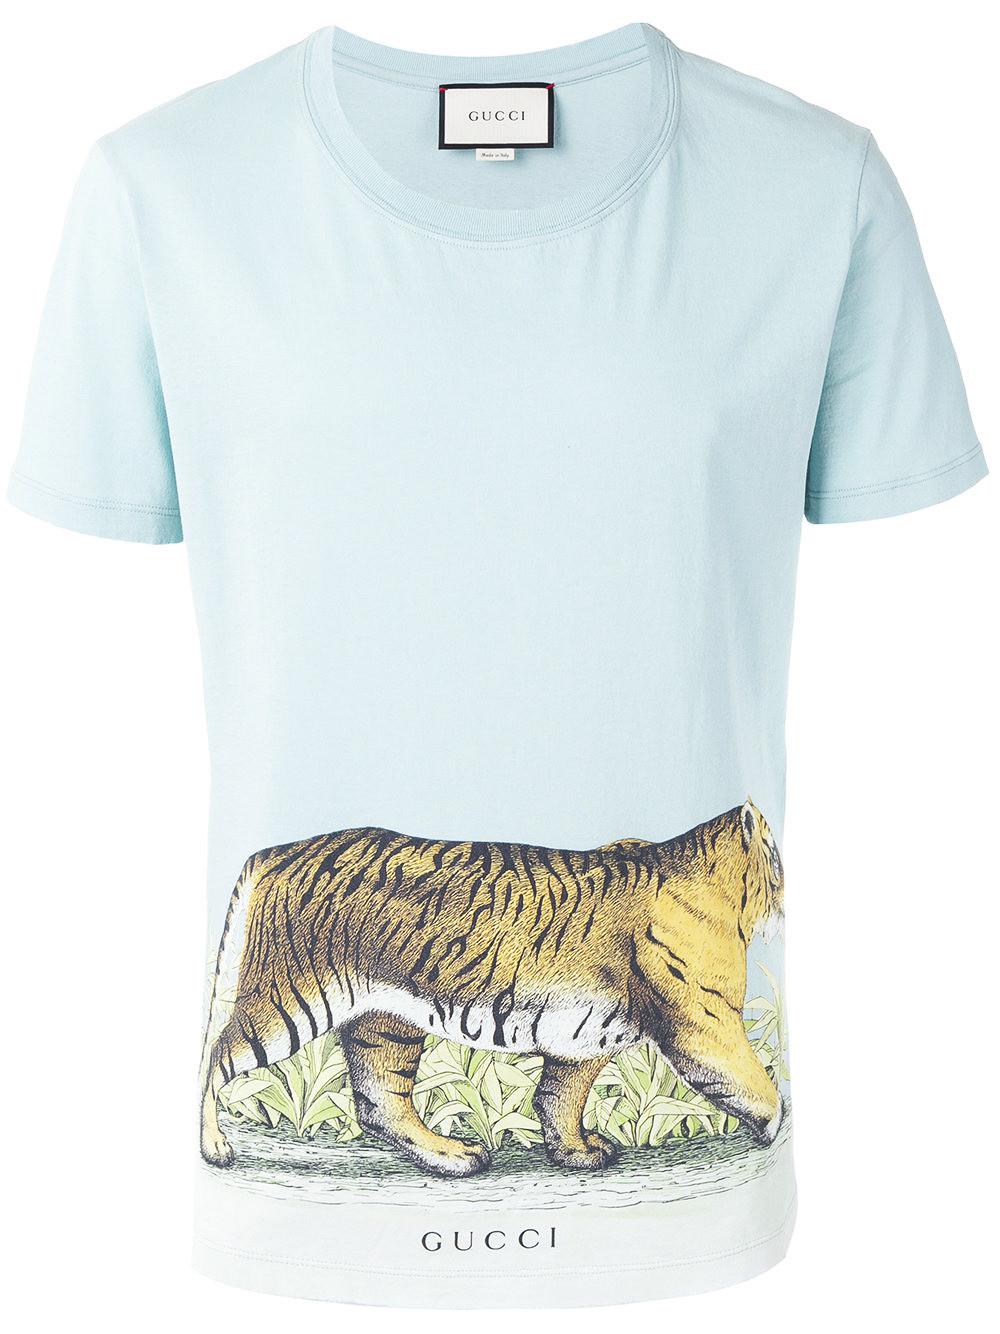 gucci tiger shirts